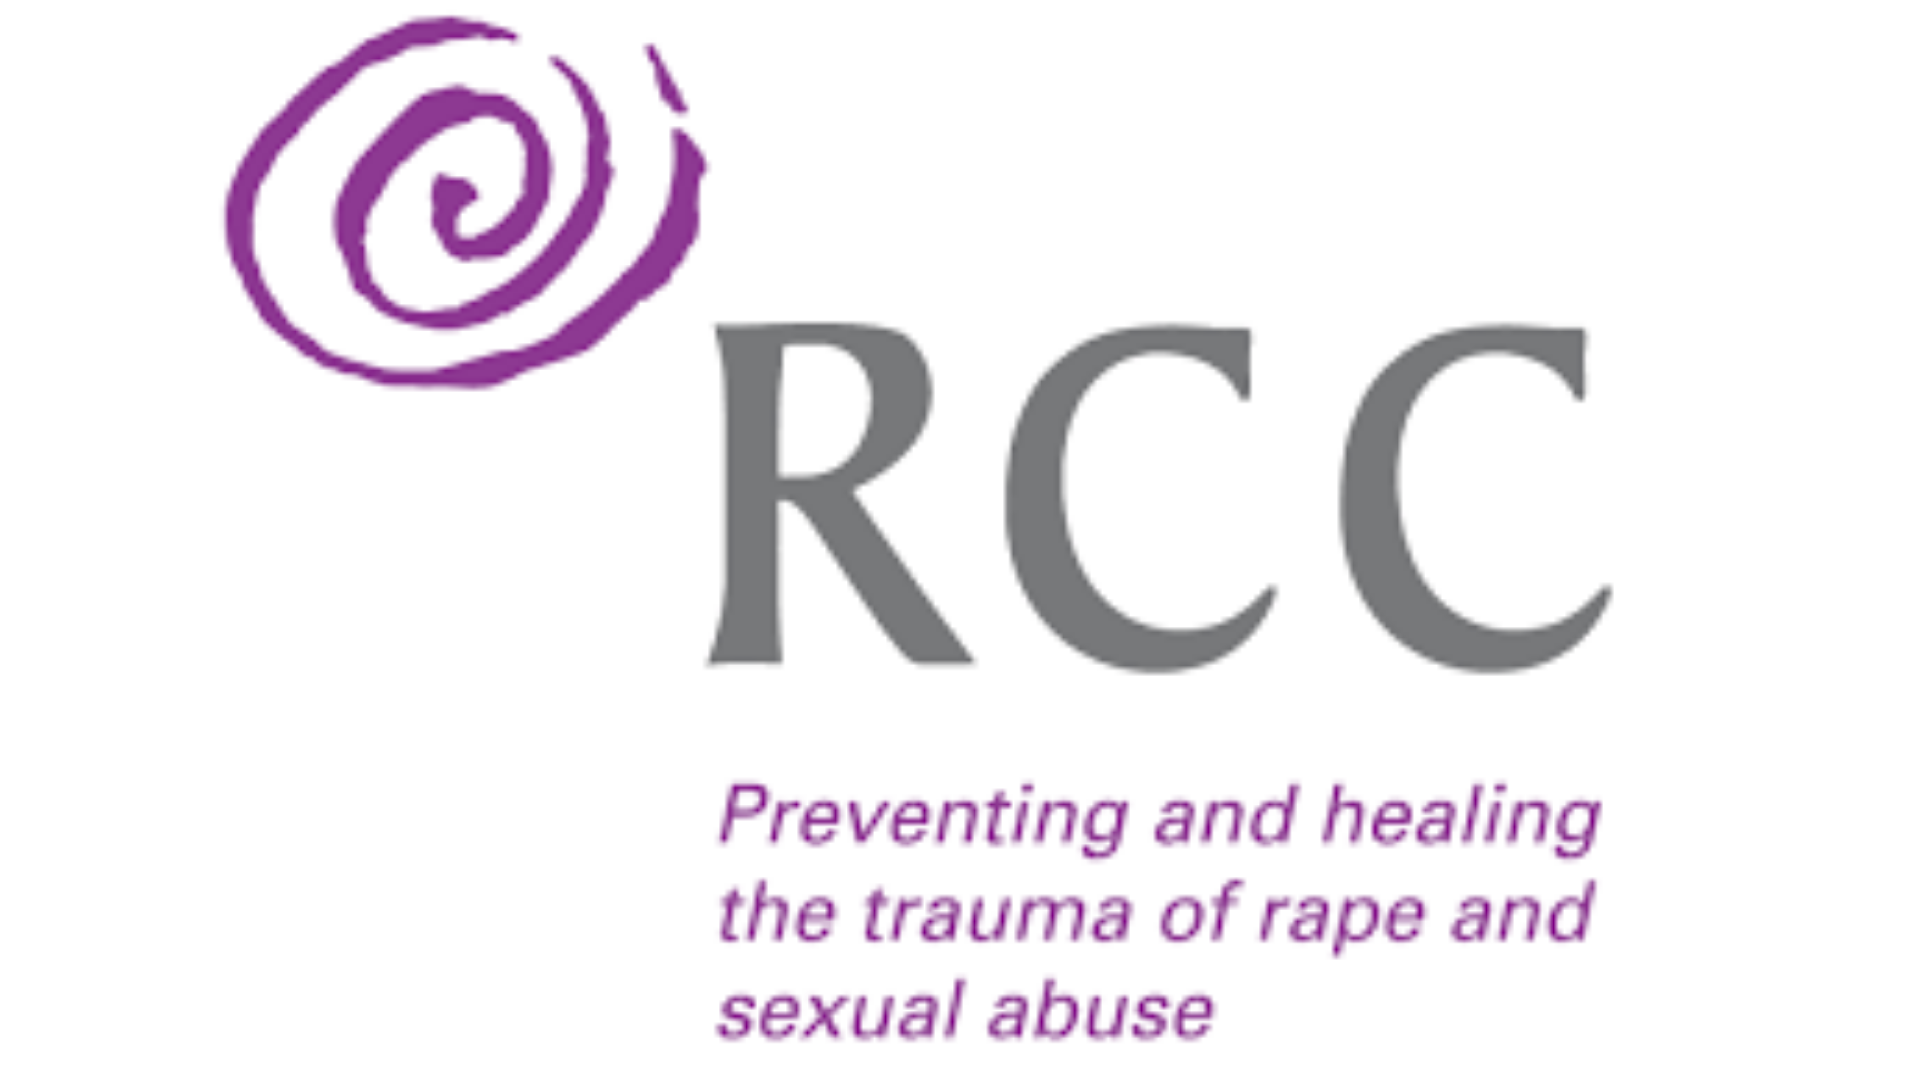 Rape Crisis Centre